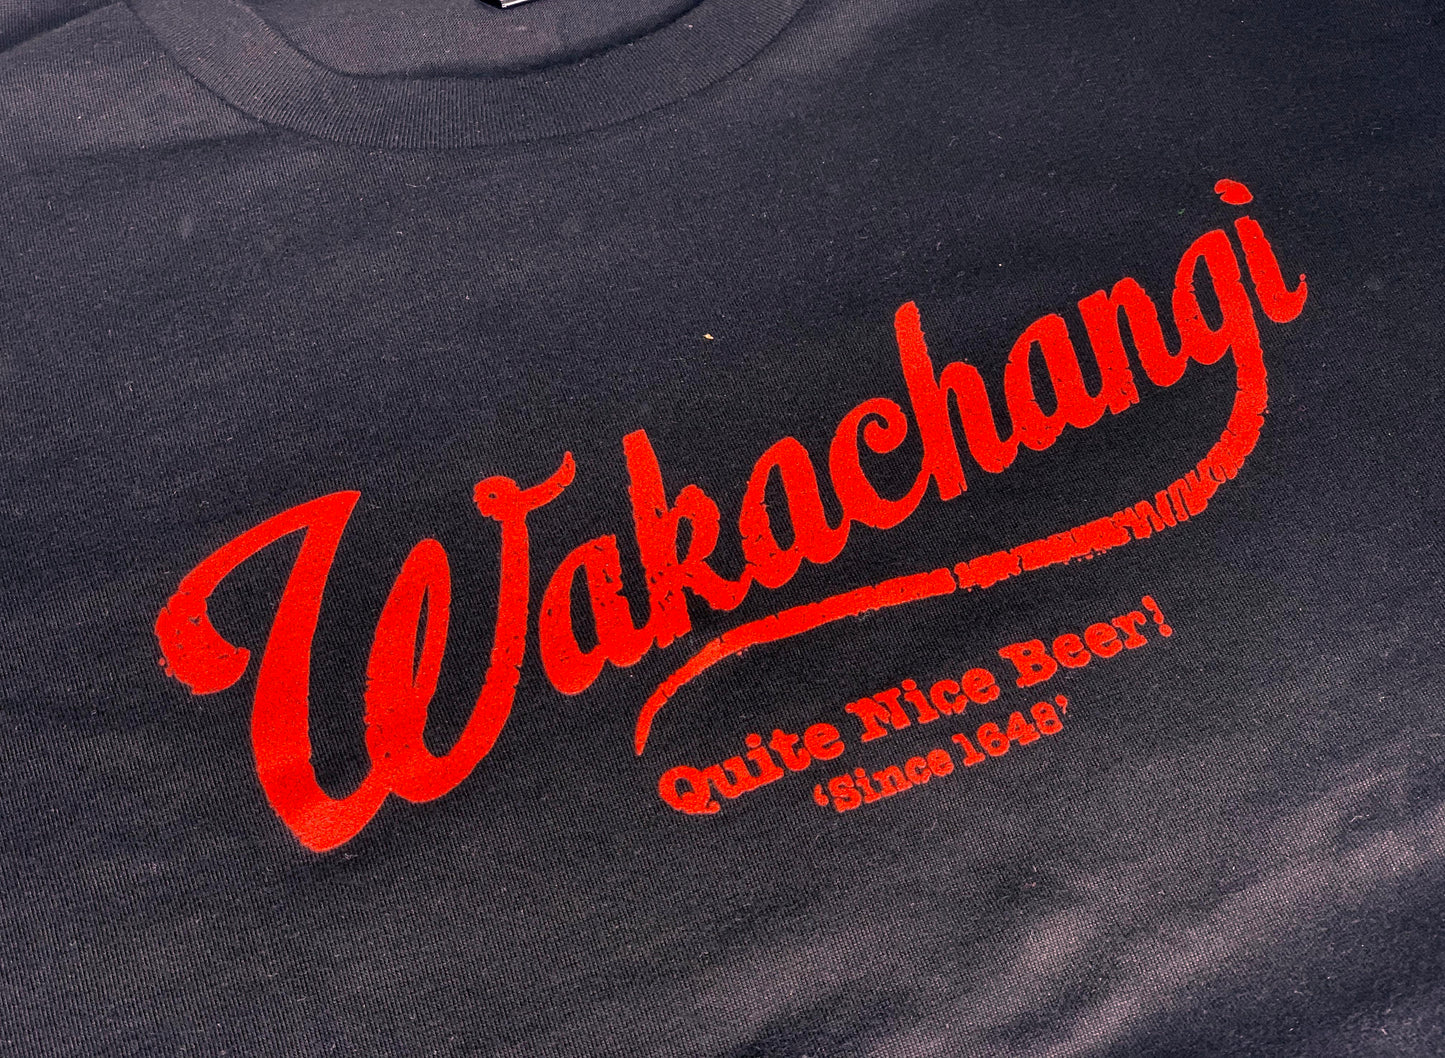 Wakachangi Black T-Shirt